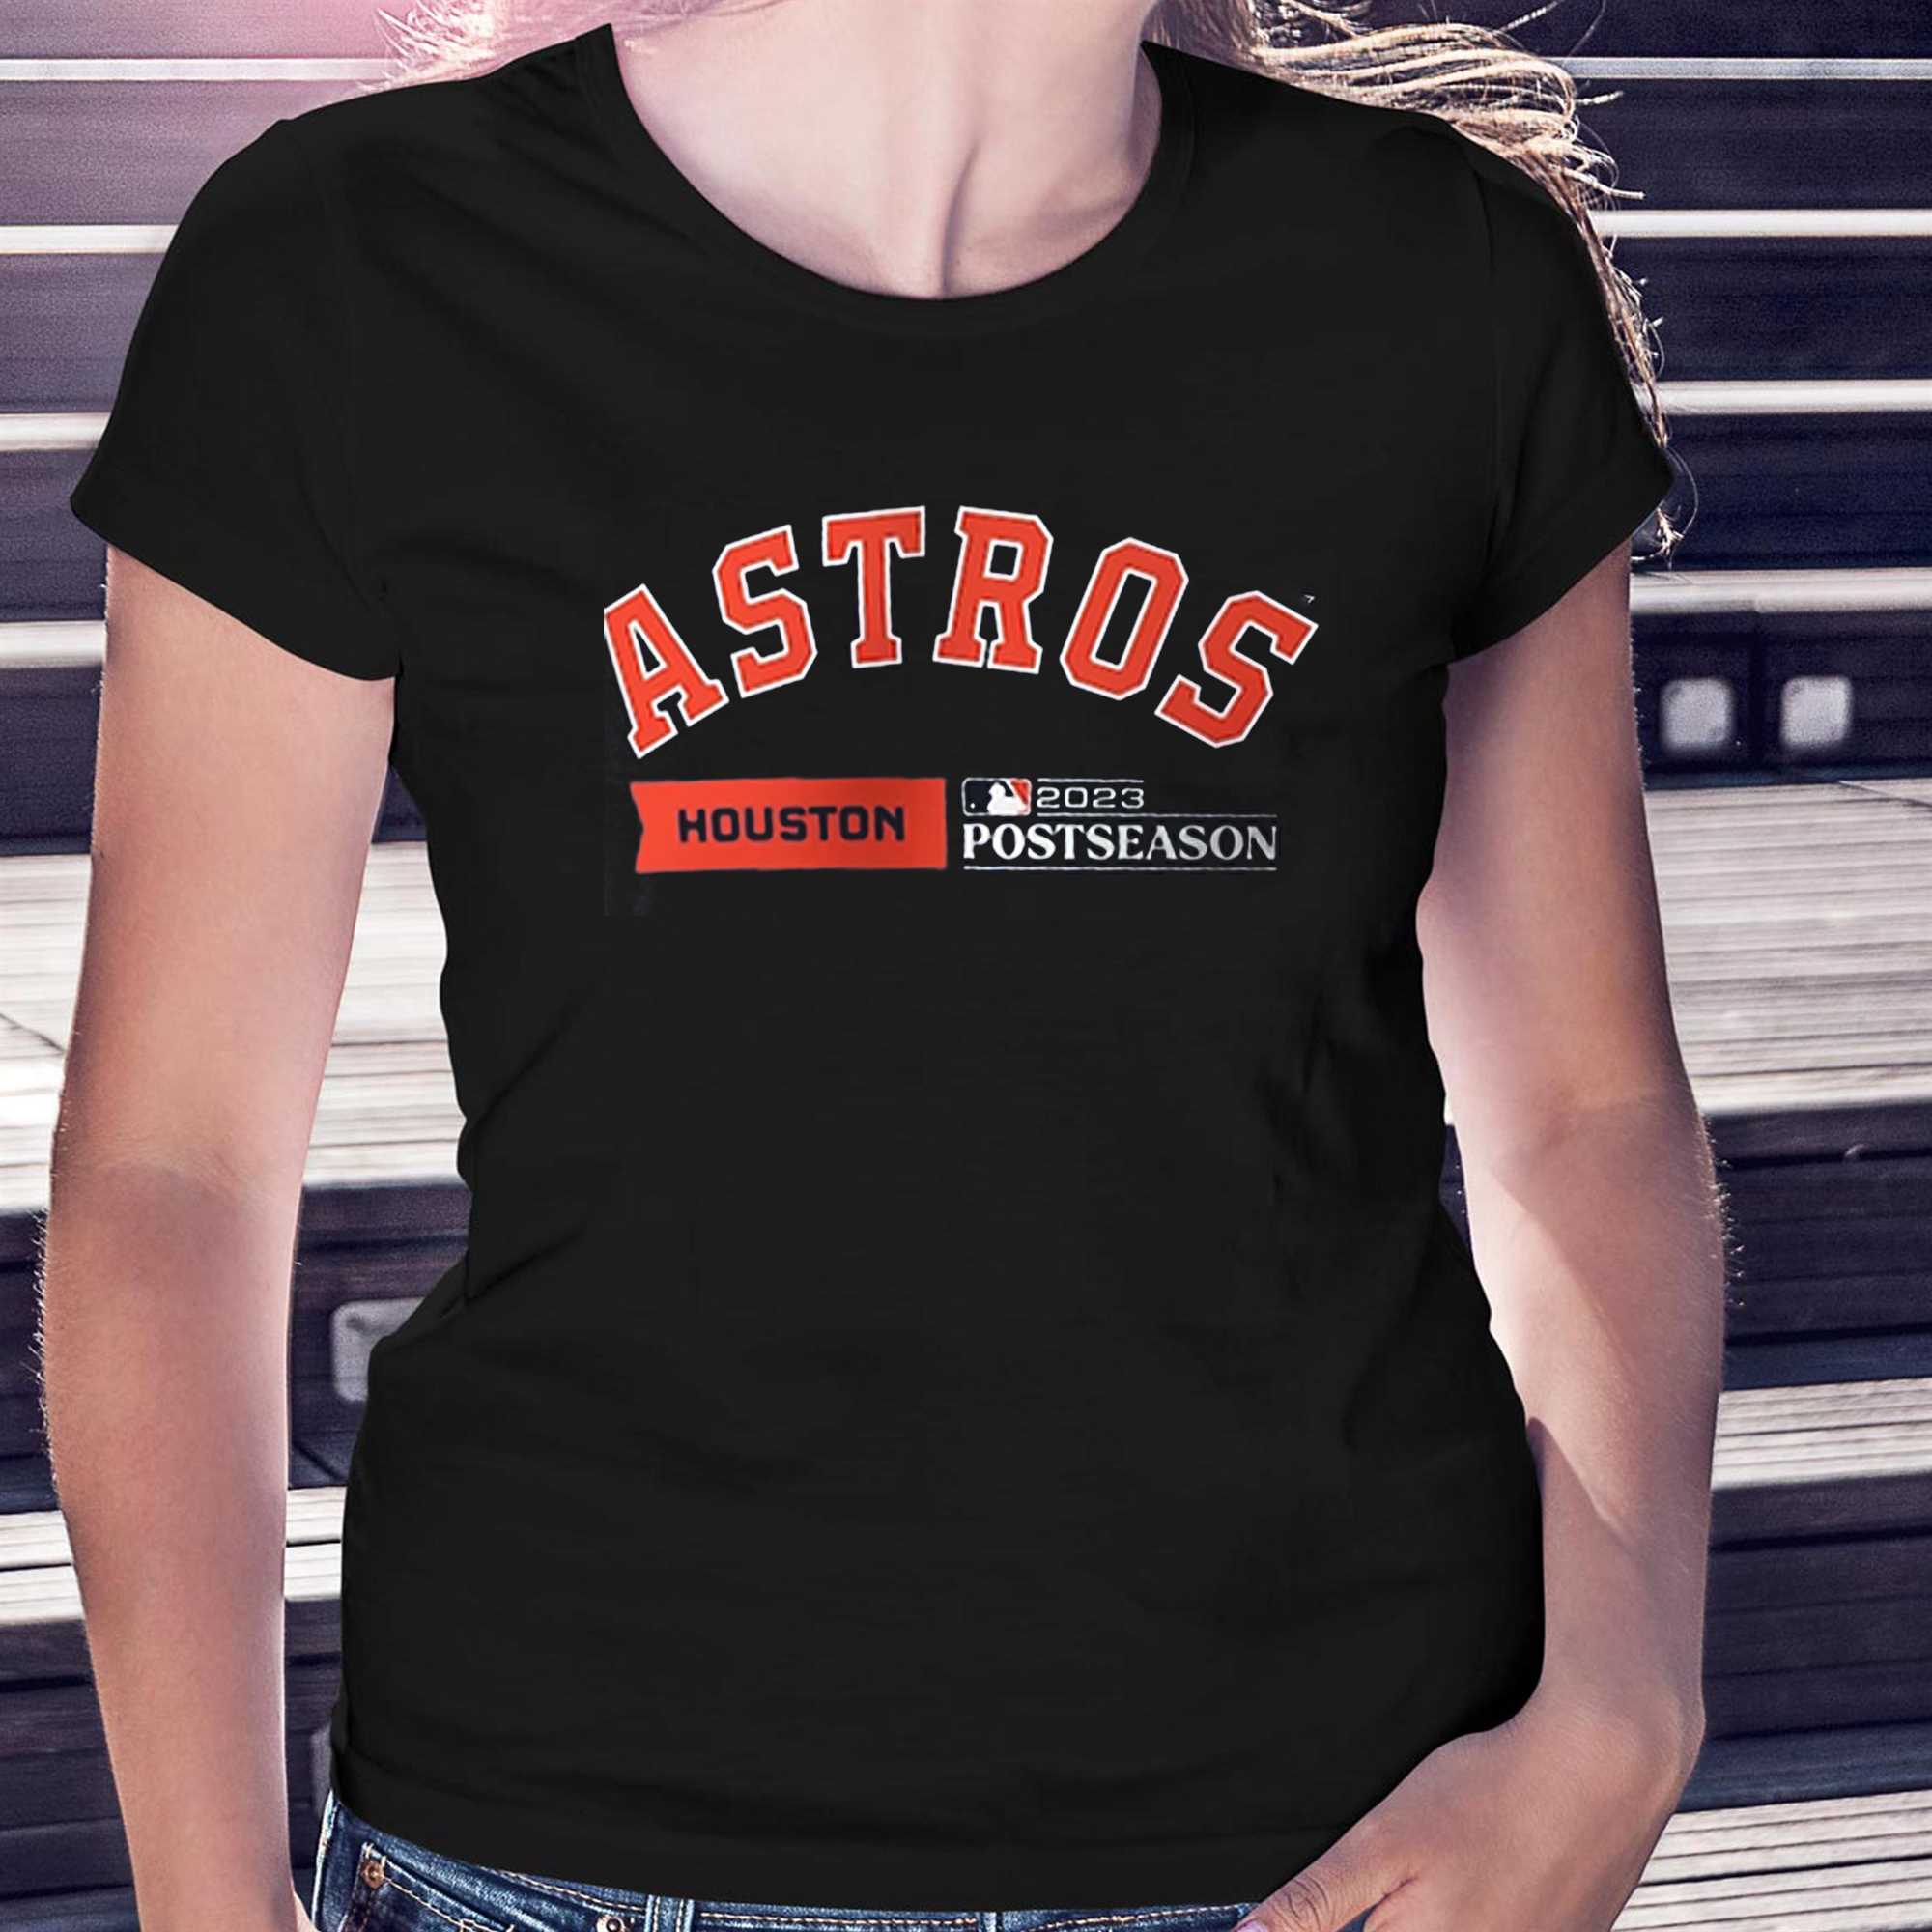 Houston Astros Post Season H-town Nike Tee Shirt Size Large